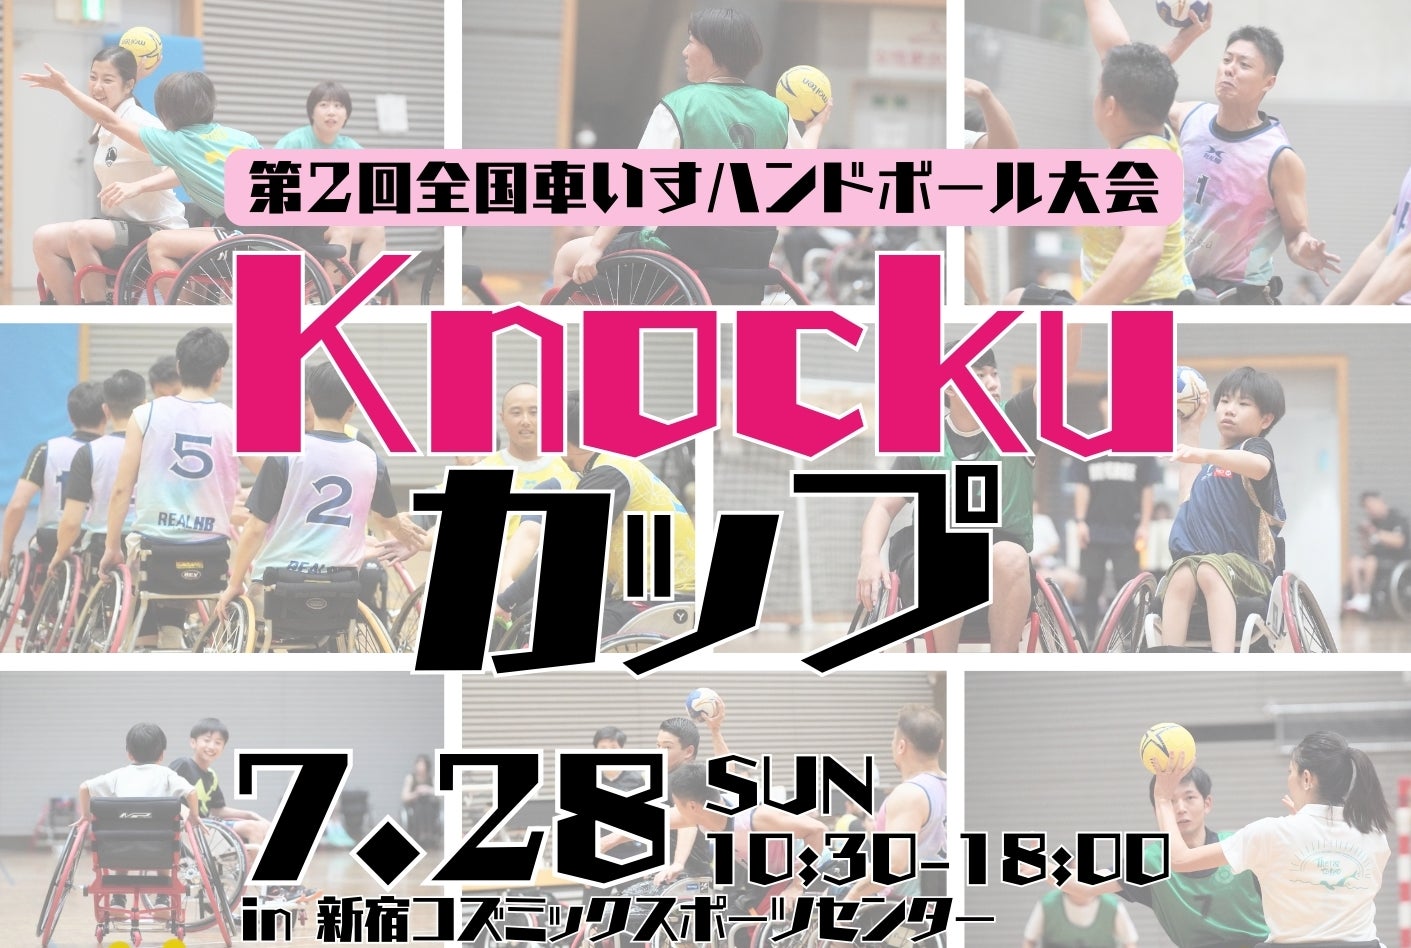 Knocku、7月28日（日）に車いすハンドボールの競技大会「第2回全国車いすハンドボールKnockuカップ」を開催。